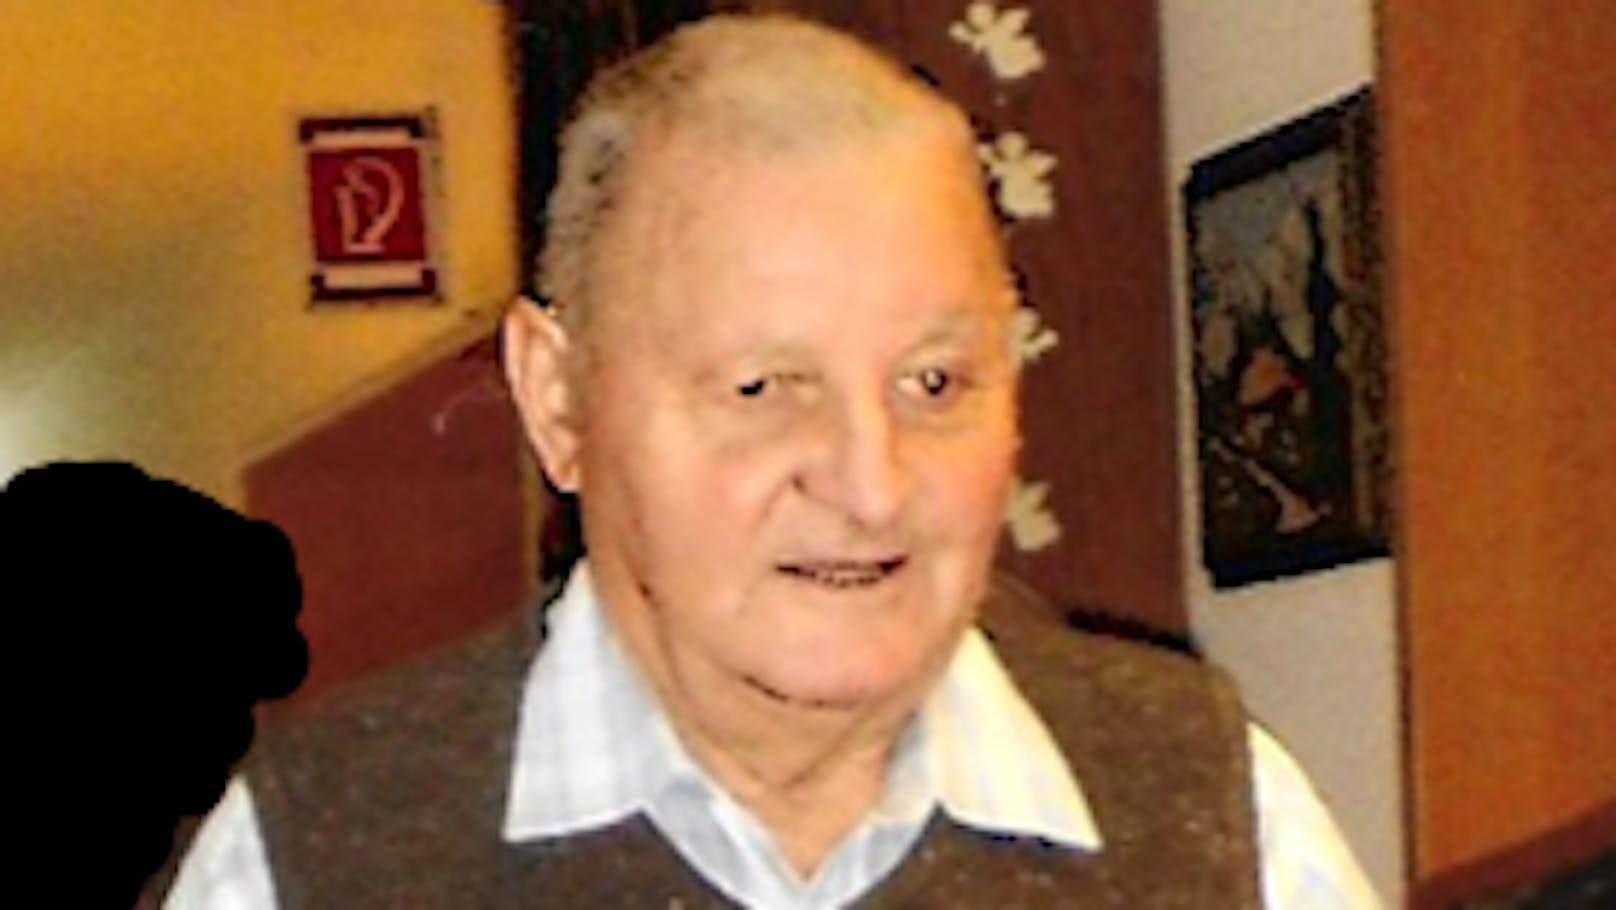 Der 81-jährige Steirer wird seit 22. Juni 2021 vermisst.